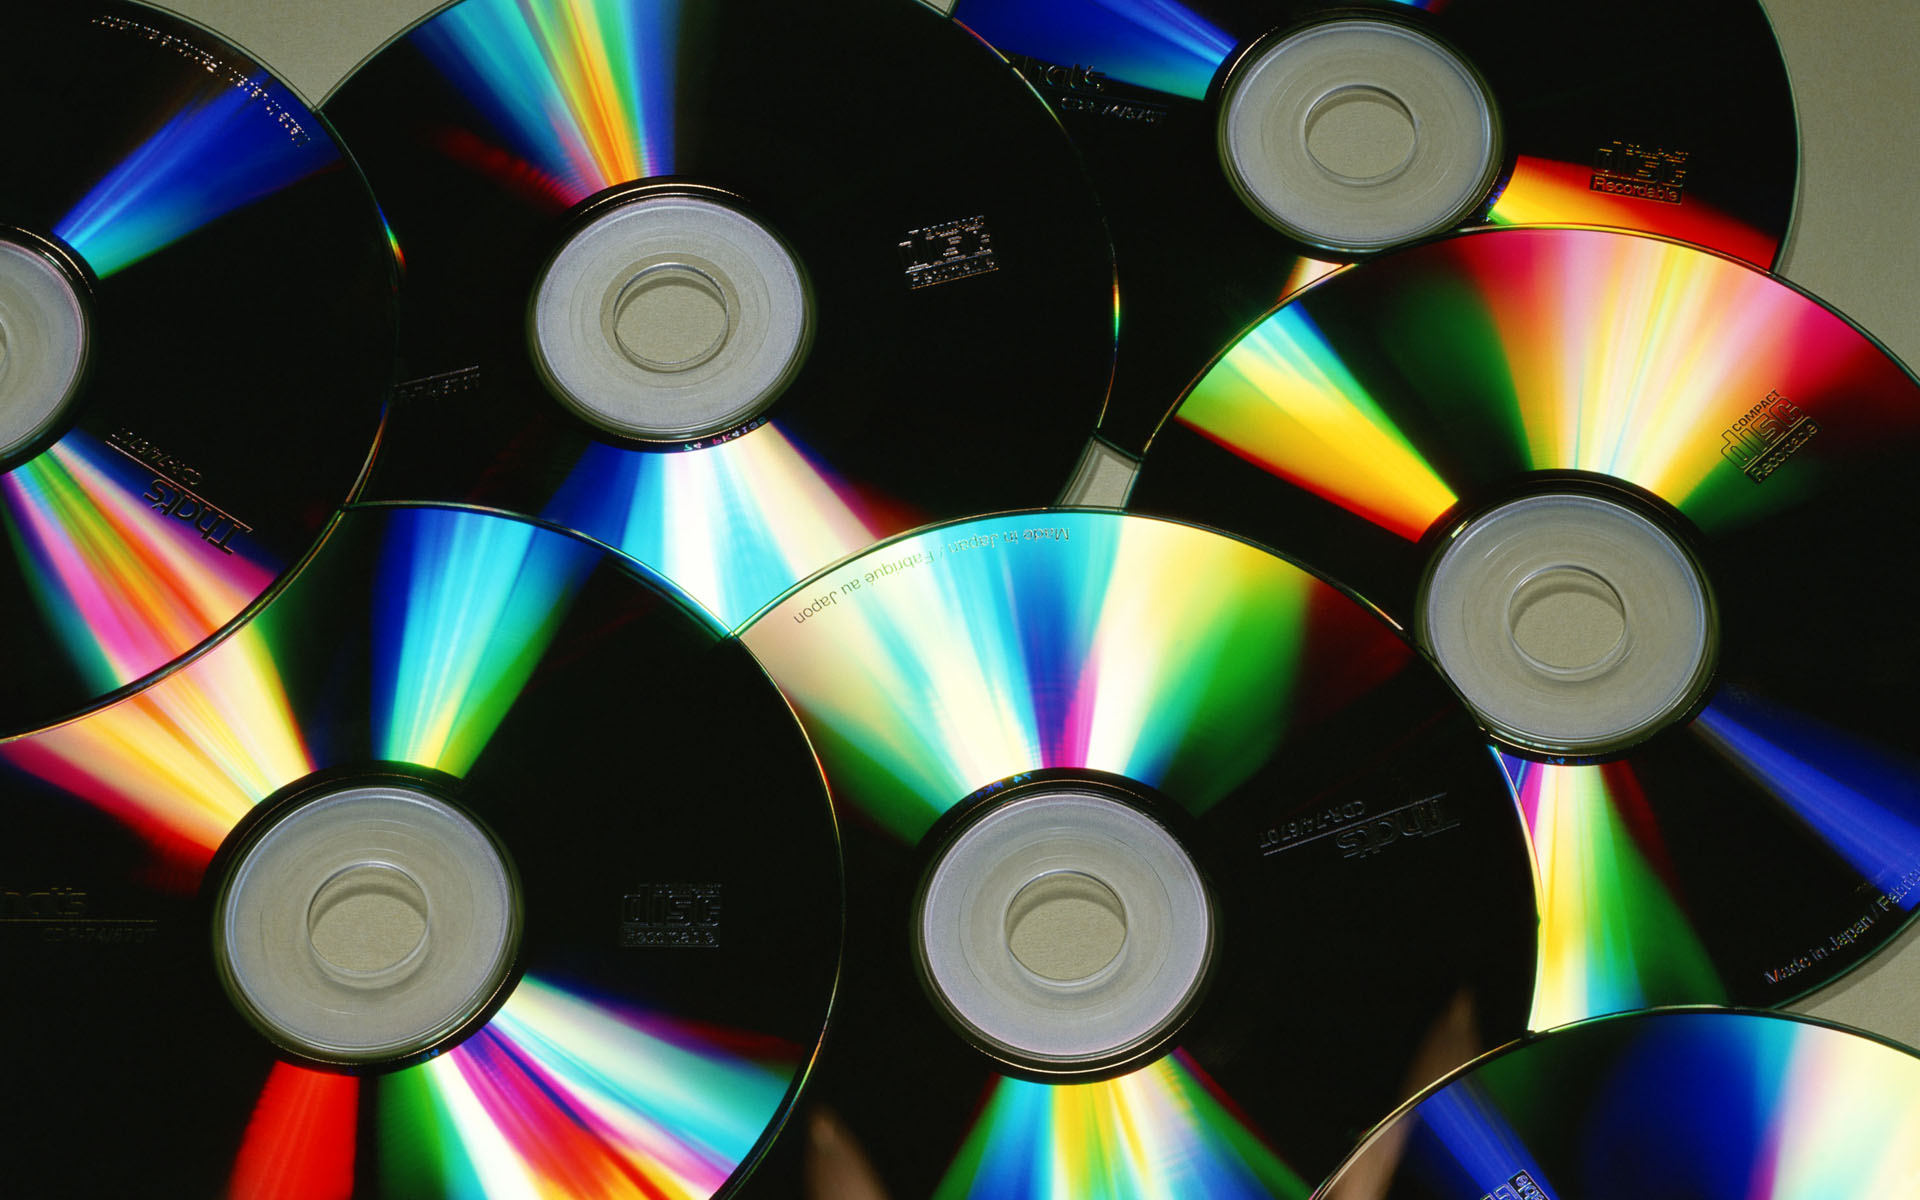 Вопрос дня: что делать со старыми видеокассетами и CD-дисками